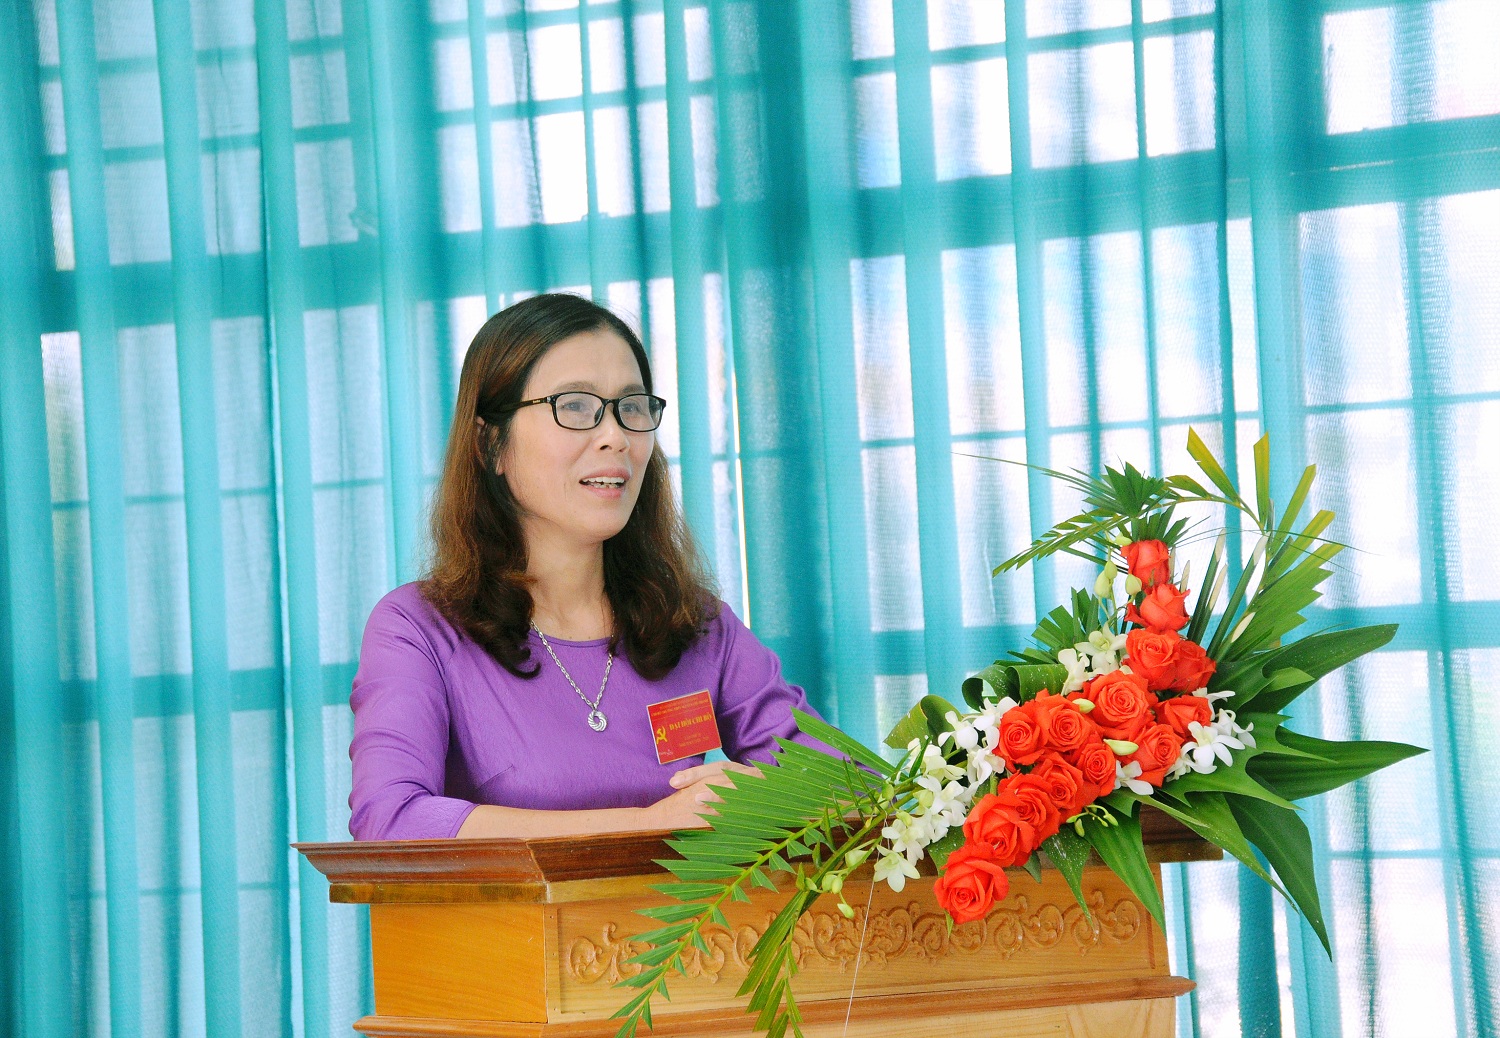 Đồng chí Lê Thị Thu Hằng, Bí thư chi bộ - Hiệu trưởng nhà trường đọc diễn văn khai mạc đại hội